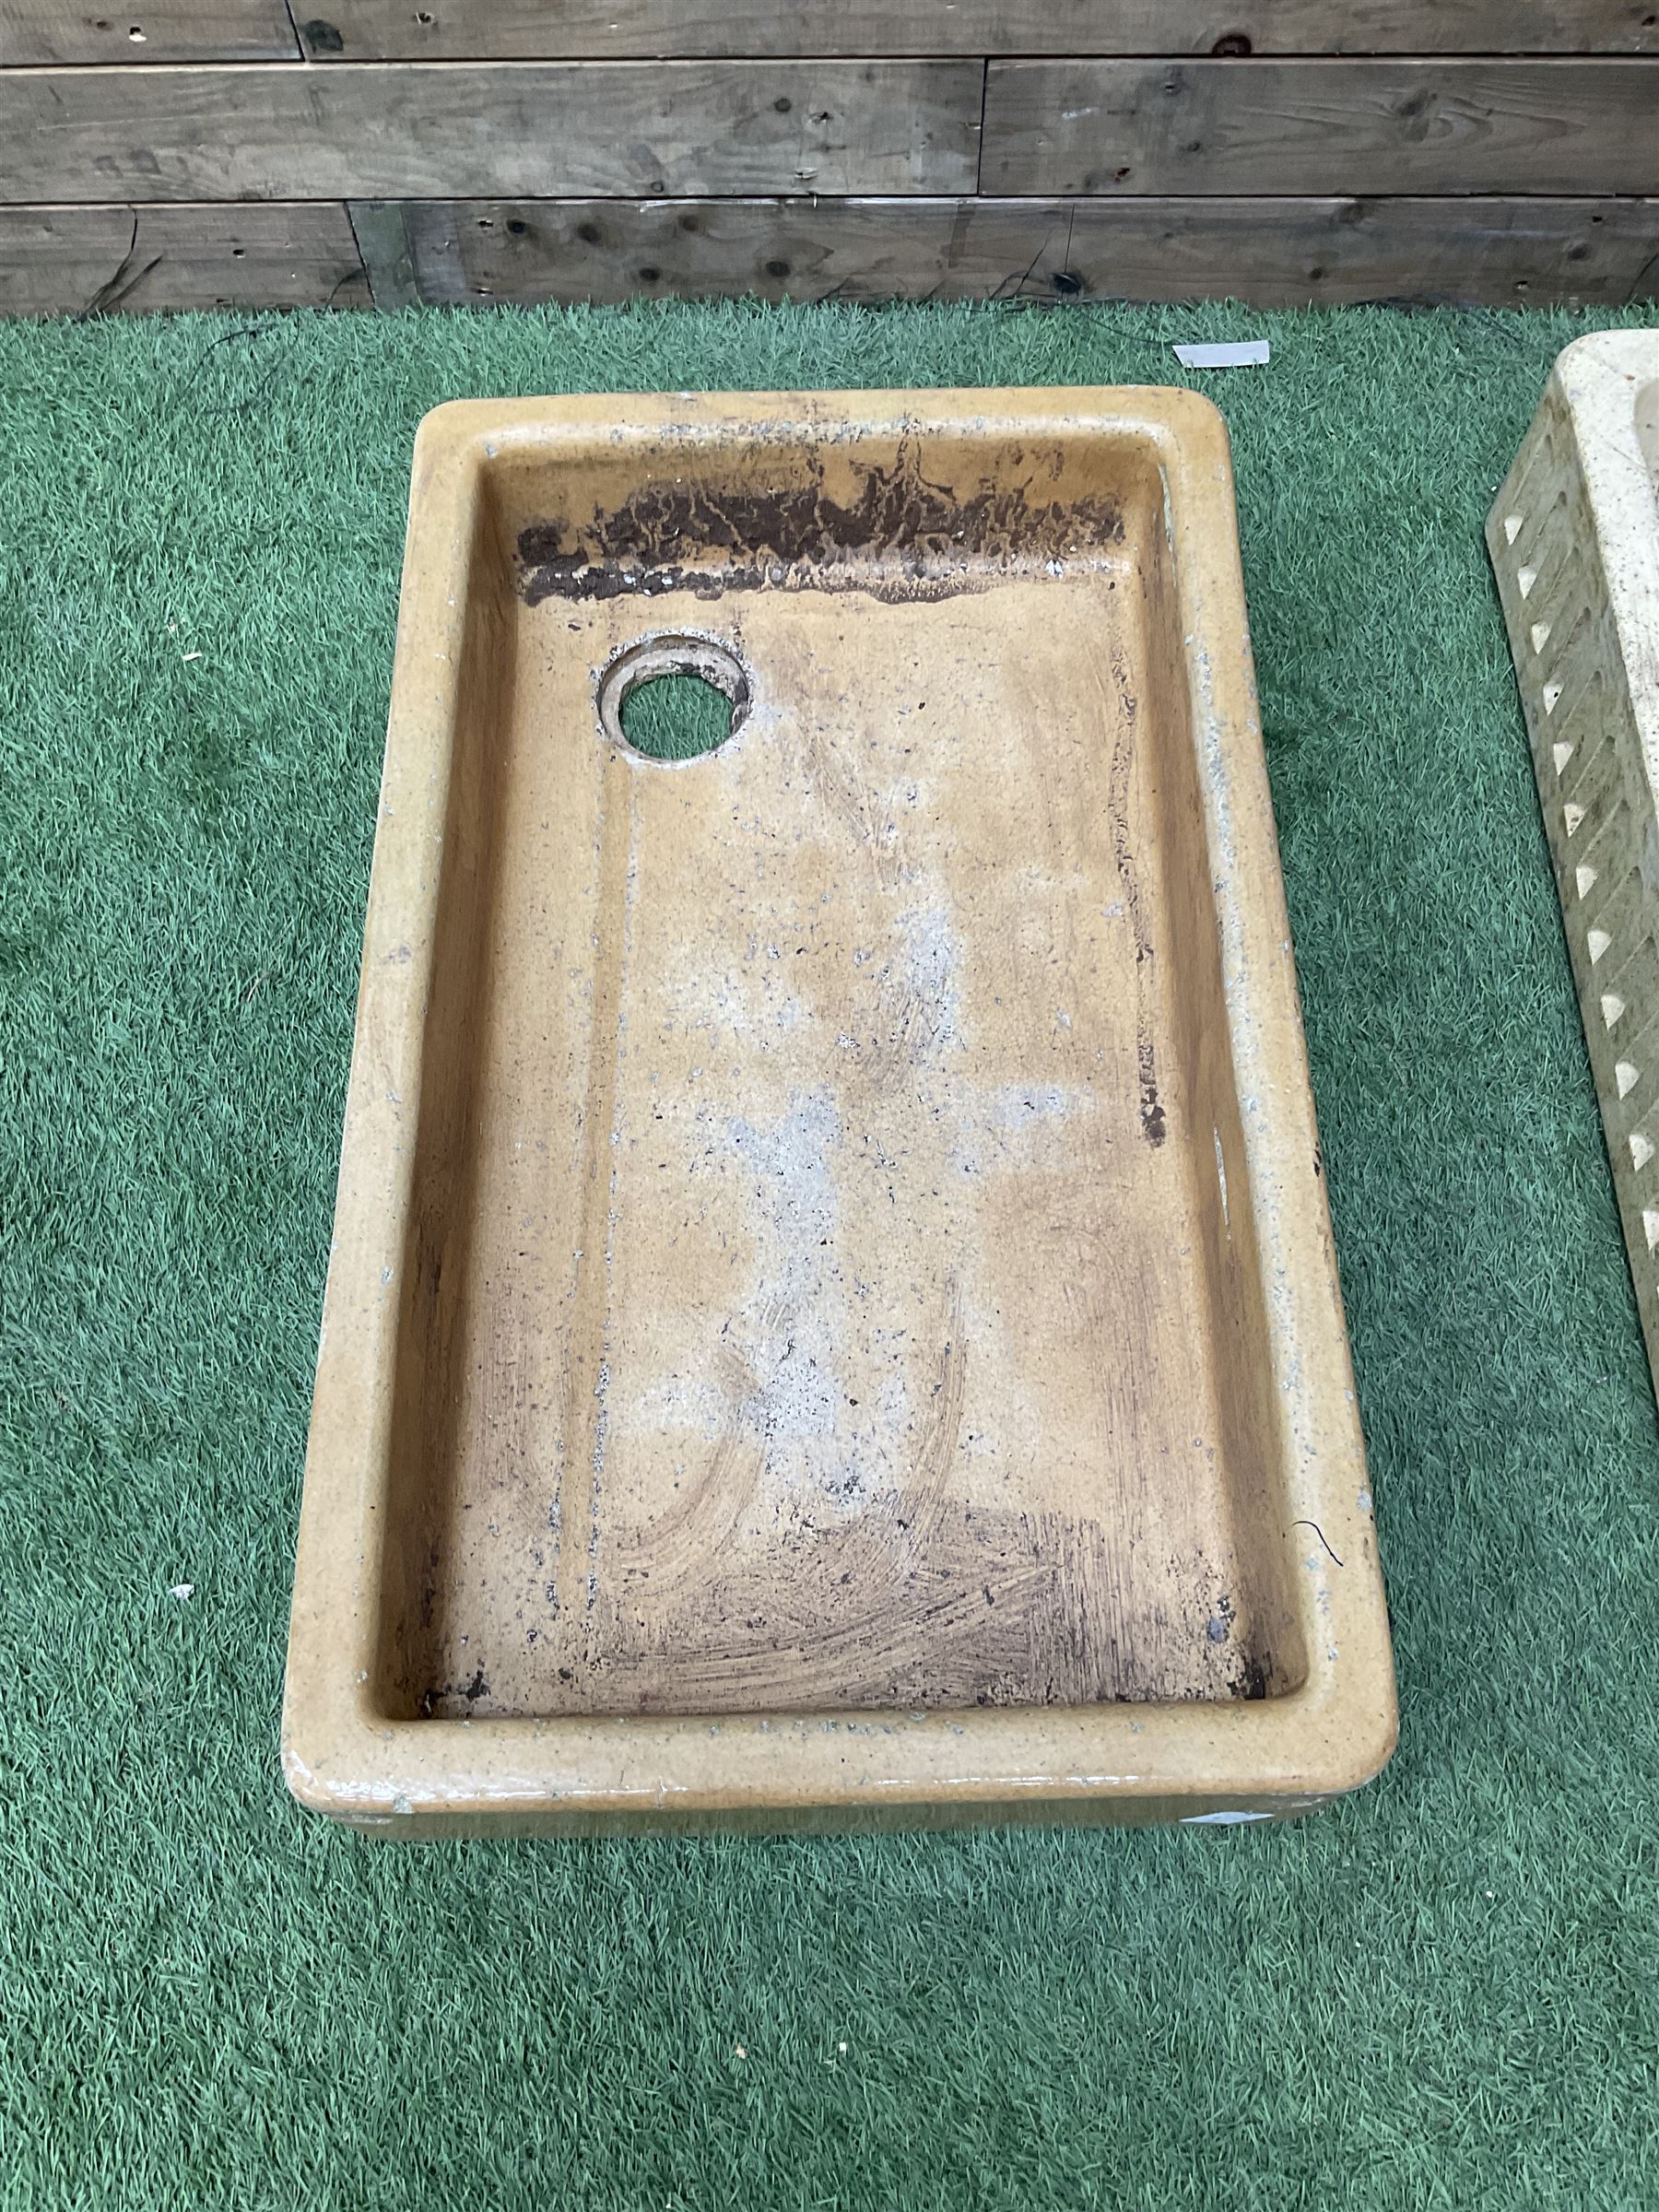 Set of three salt glazed sinks - Image 4 of 5